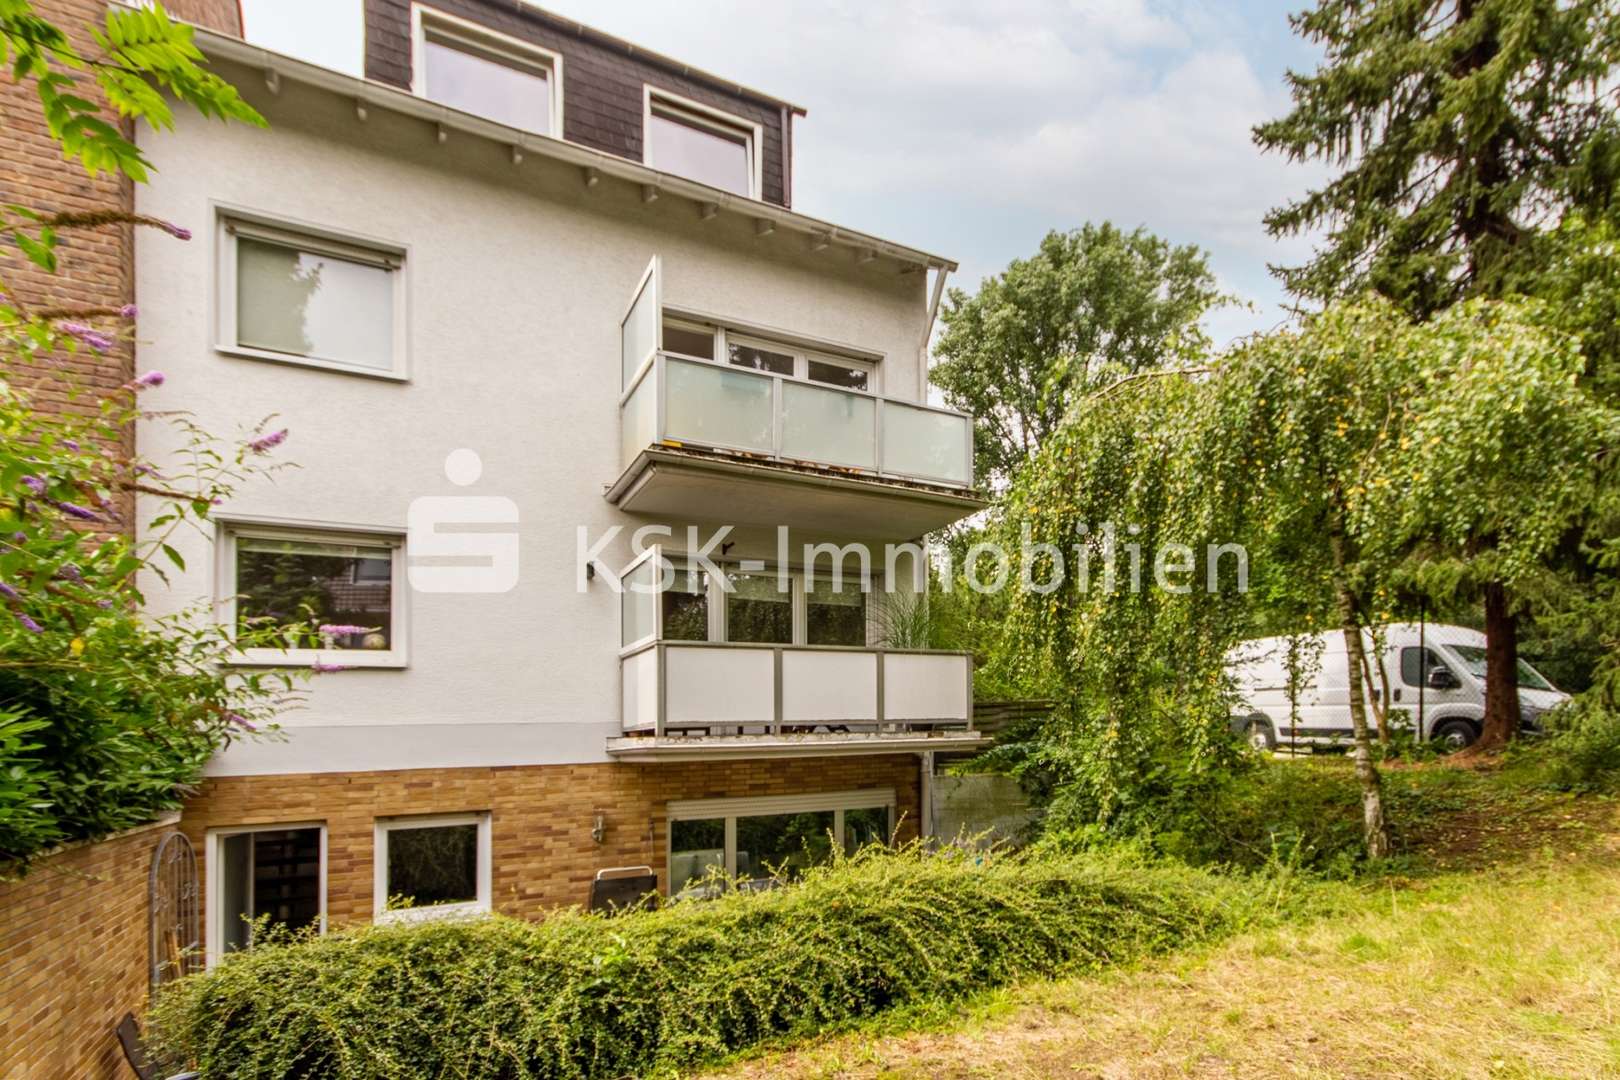 117758  Rückansicht - Mehrfamilienhaus in 50829 Köln / Bocklemünd/Mengenich mit 235m² als Kapitalanlage günstig kaufen